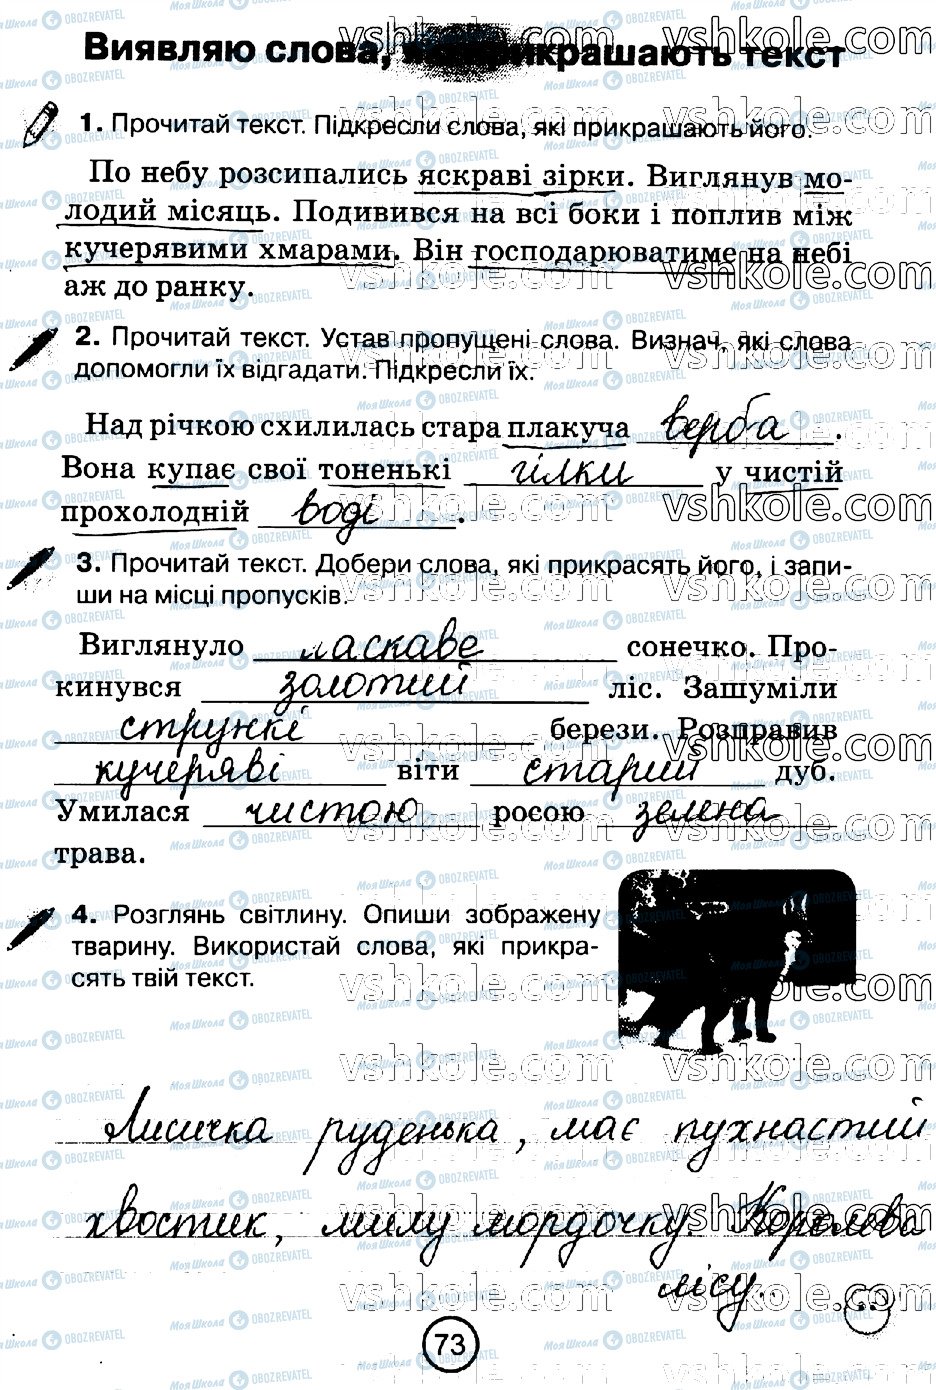 ГДЗ Укр мова 2 класс страница стр73